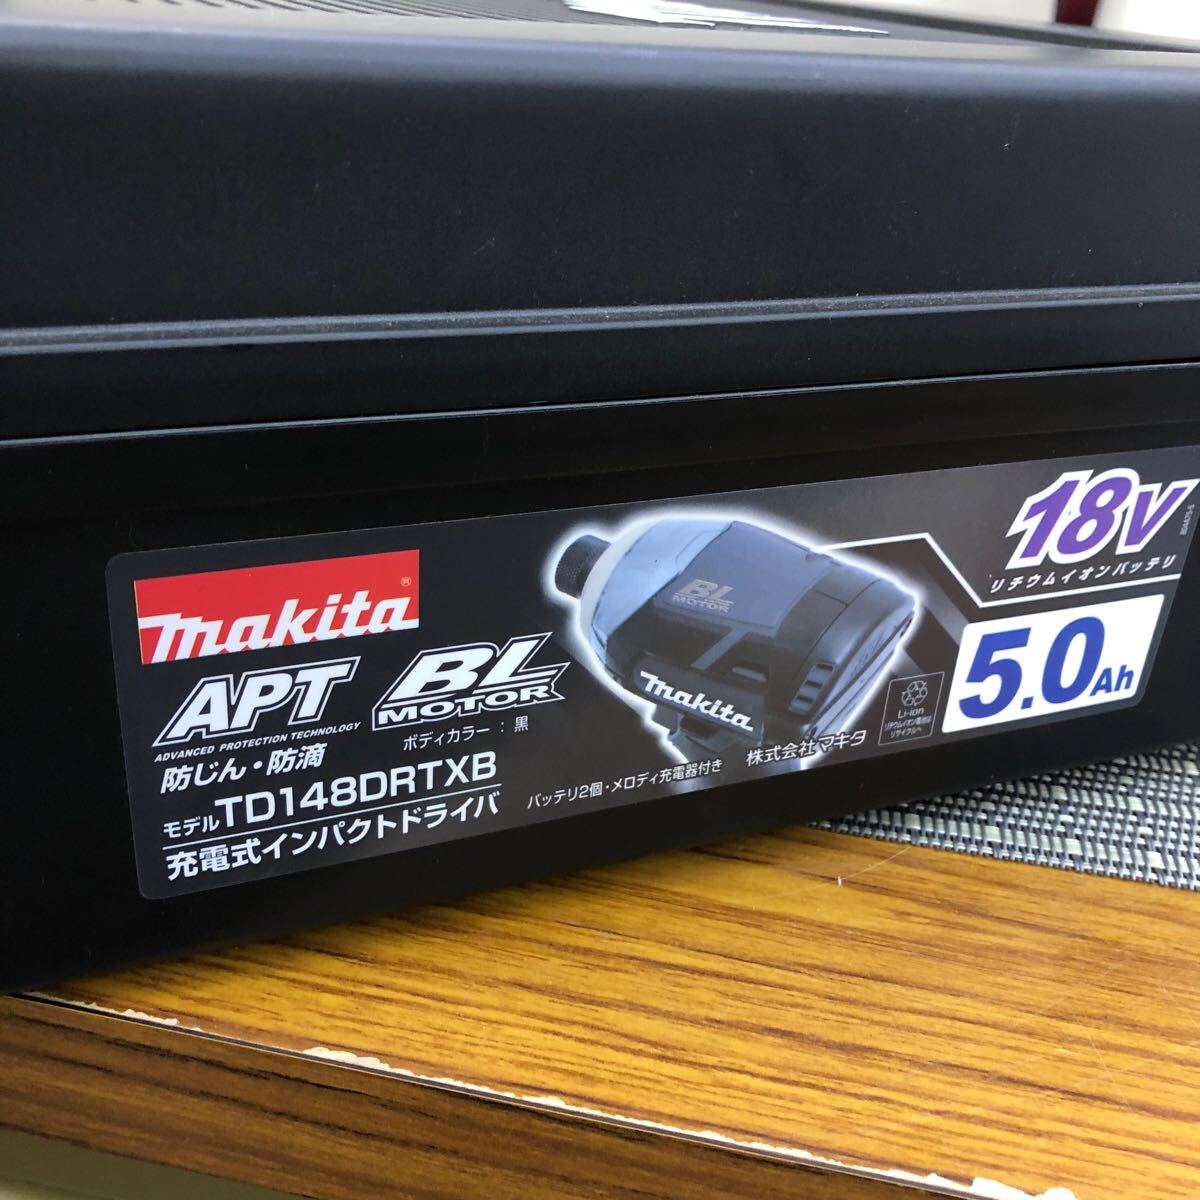 美品 マキタ インパクトドライバ TD148DRTXB 純正充電器 純正バッテリー2個 付属 18V 5.0Ah makita 充電式インパクトドライバ 黒の画像10